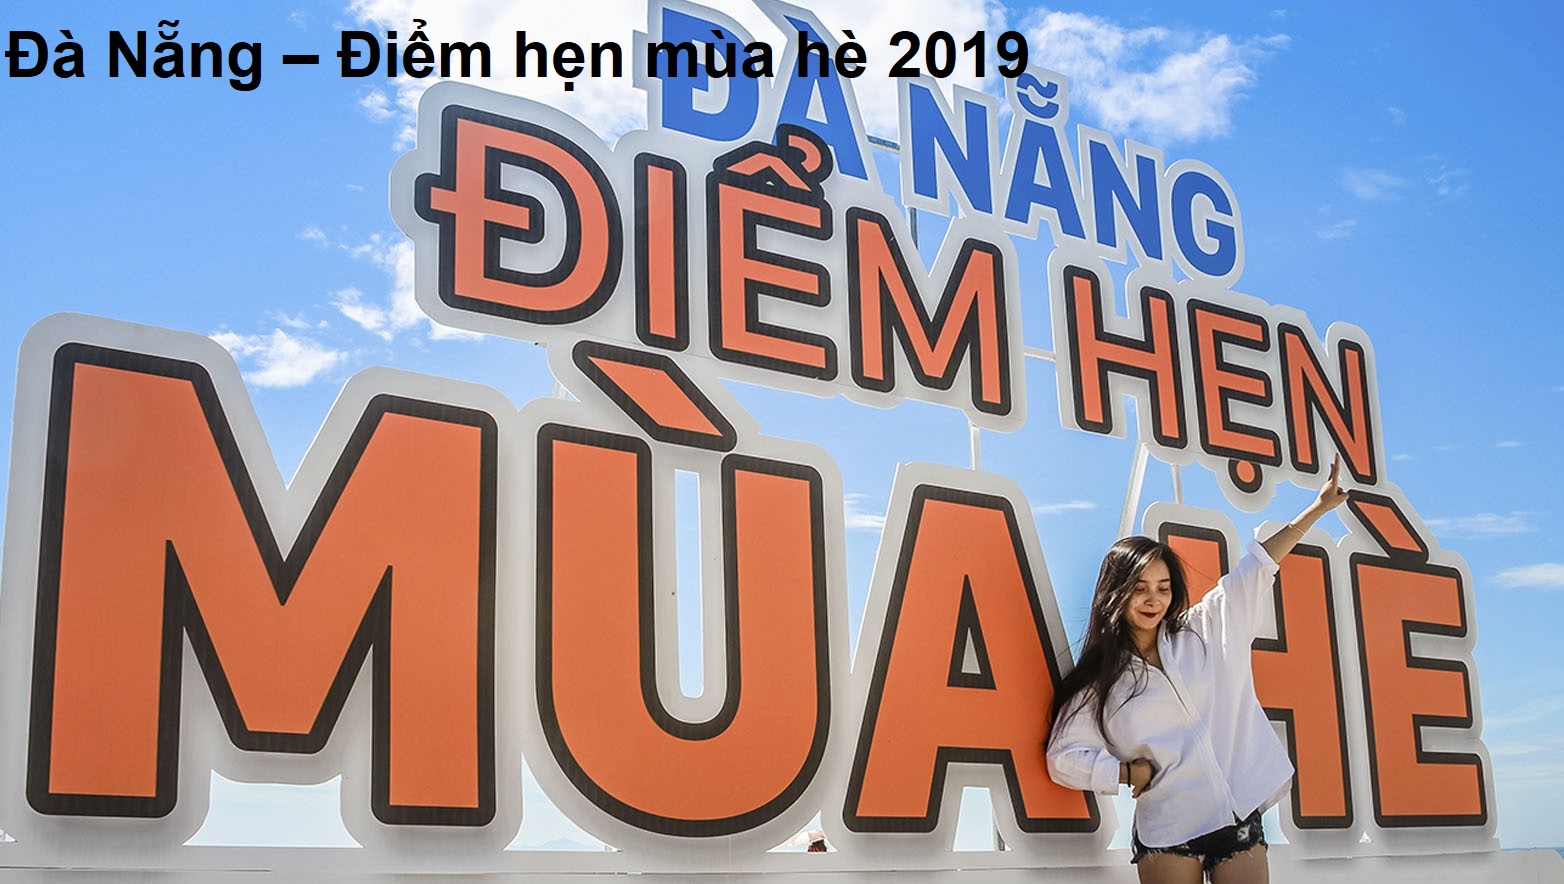 da-nang-diem-hen-mua-he-2019